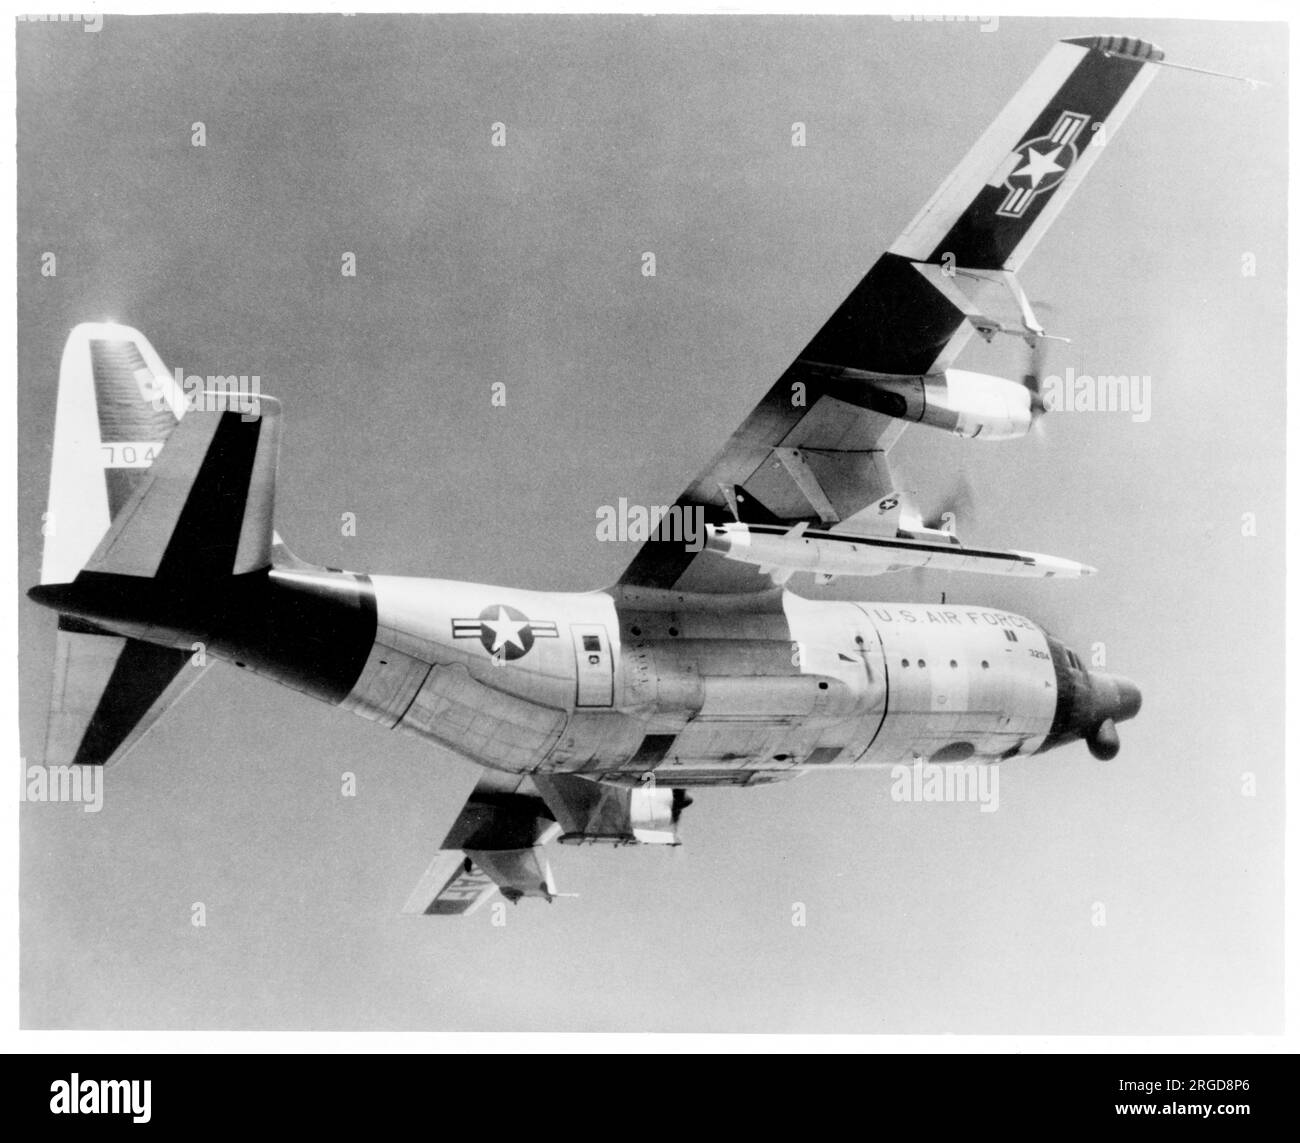 United States Air Force - Lockheed DC-130a Hercules 57-0497 (msn 182-3204), vu transportant un drone cible Northrop / Radioplane Q-4B sous une aile, avant d'être lancé au-dessus de la base aérienne Holloman au Nouveau-Mexique. (Construit comme un C-130a-45-LM, cet avion a été converti à la norme DC-130a pour lancer et contrôler des drones cibles et de recherche). Banque D'Images